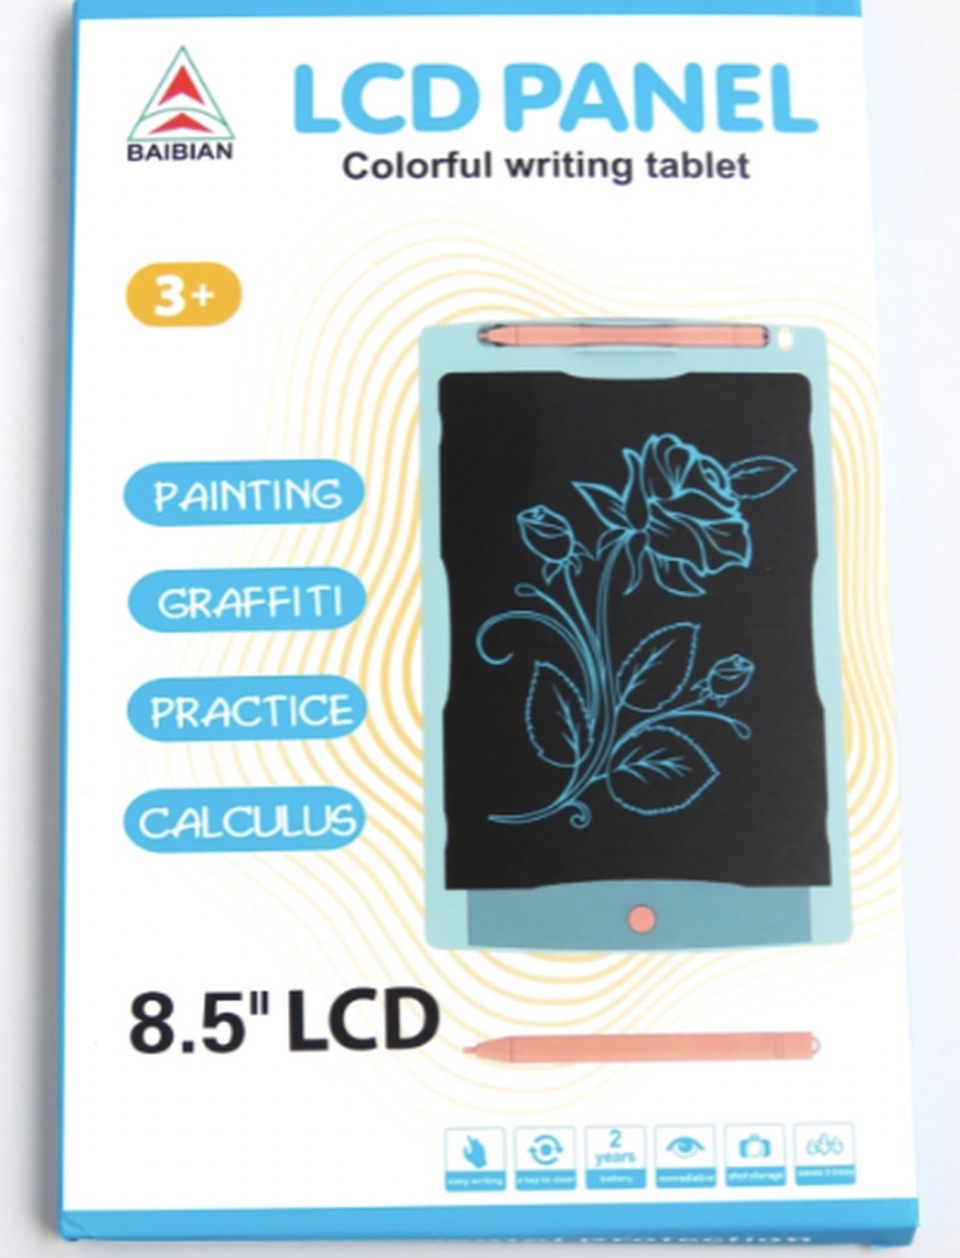 Планшет 8.5 Дюймов для рисования LCD цветной графический - 590 ₽, заказать онлайн.